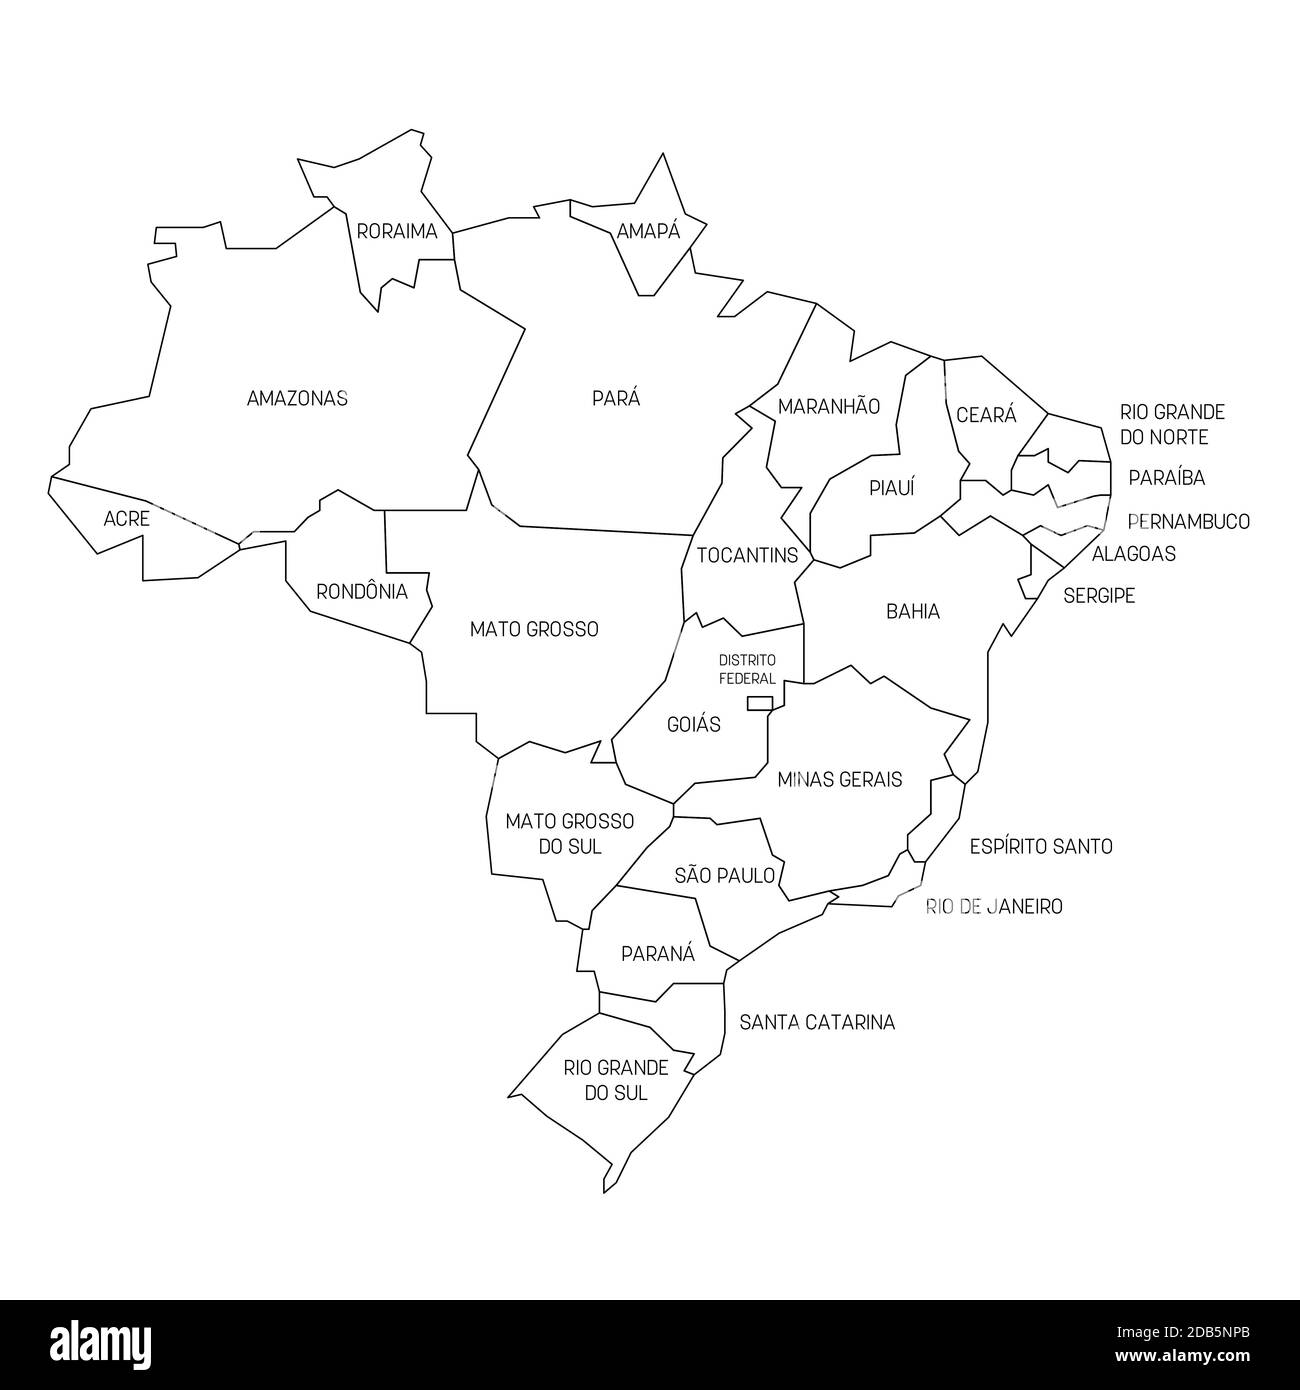 Mappa politica del Brasile. Divisioni amministrative - stati. Mappa vettoriale semplice con etichette. Illustrazione Vettoriale